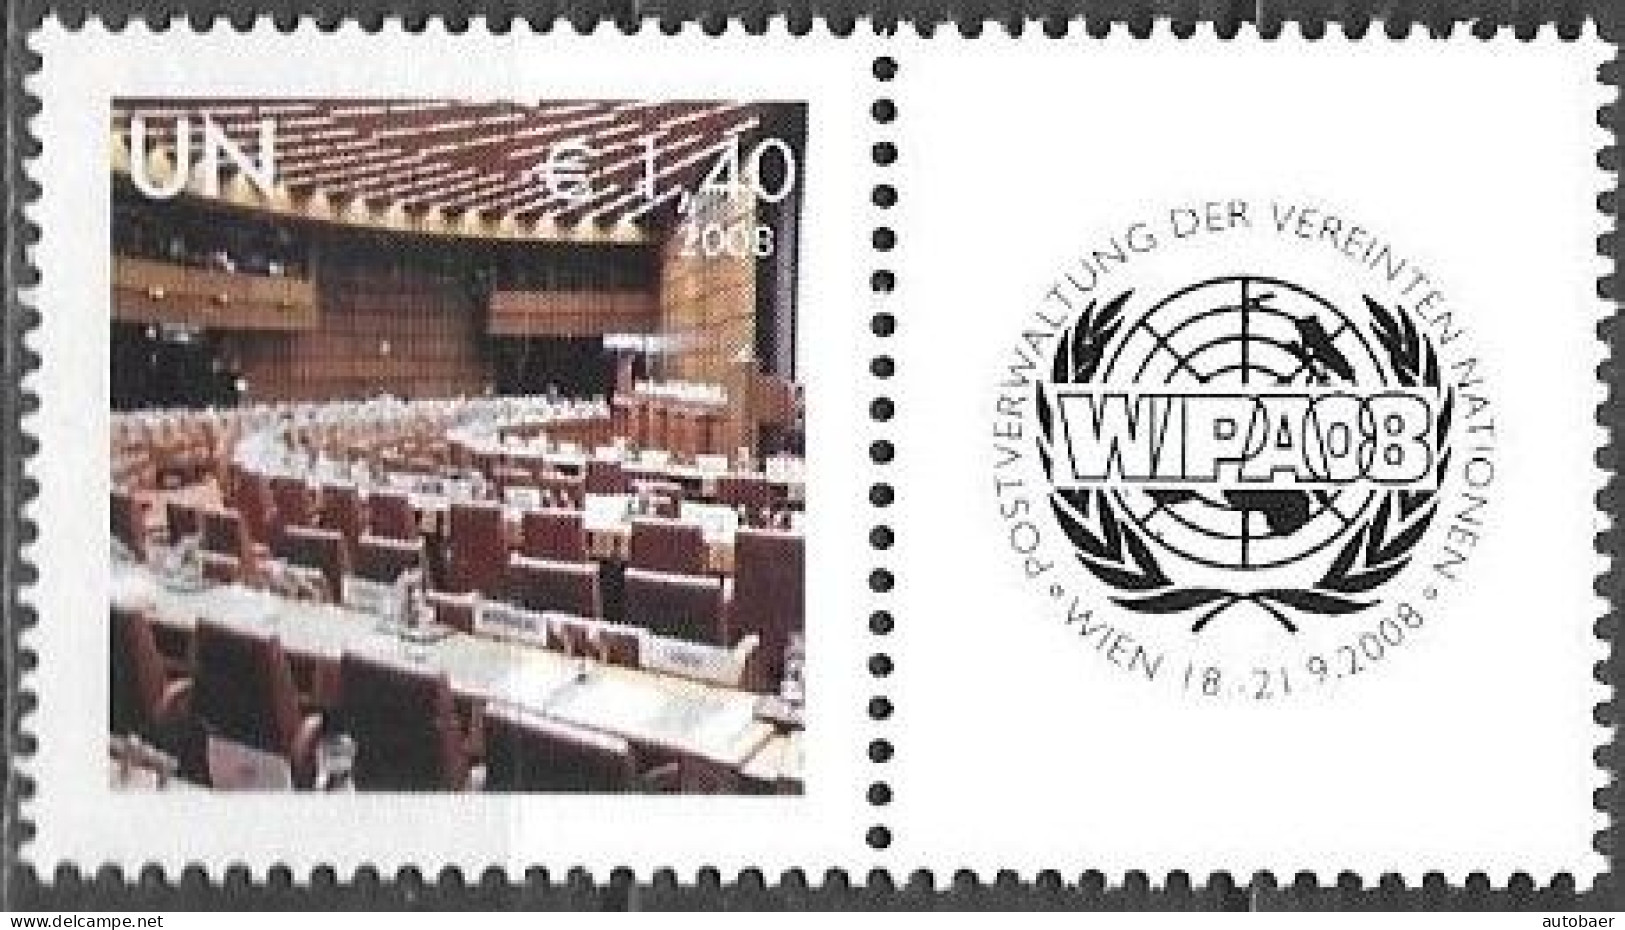 United Nations UNO UN Vereinte Nationen Vienna Wien 2008 Stamp Exhibition WIPA Briefmarken Ausstellung Mi. 554 MNH ** - Nuovi